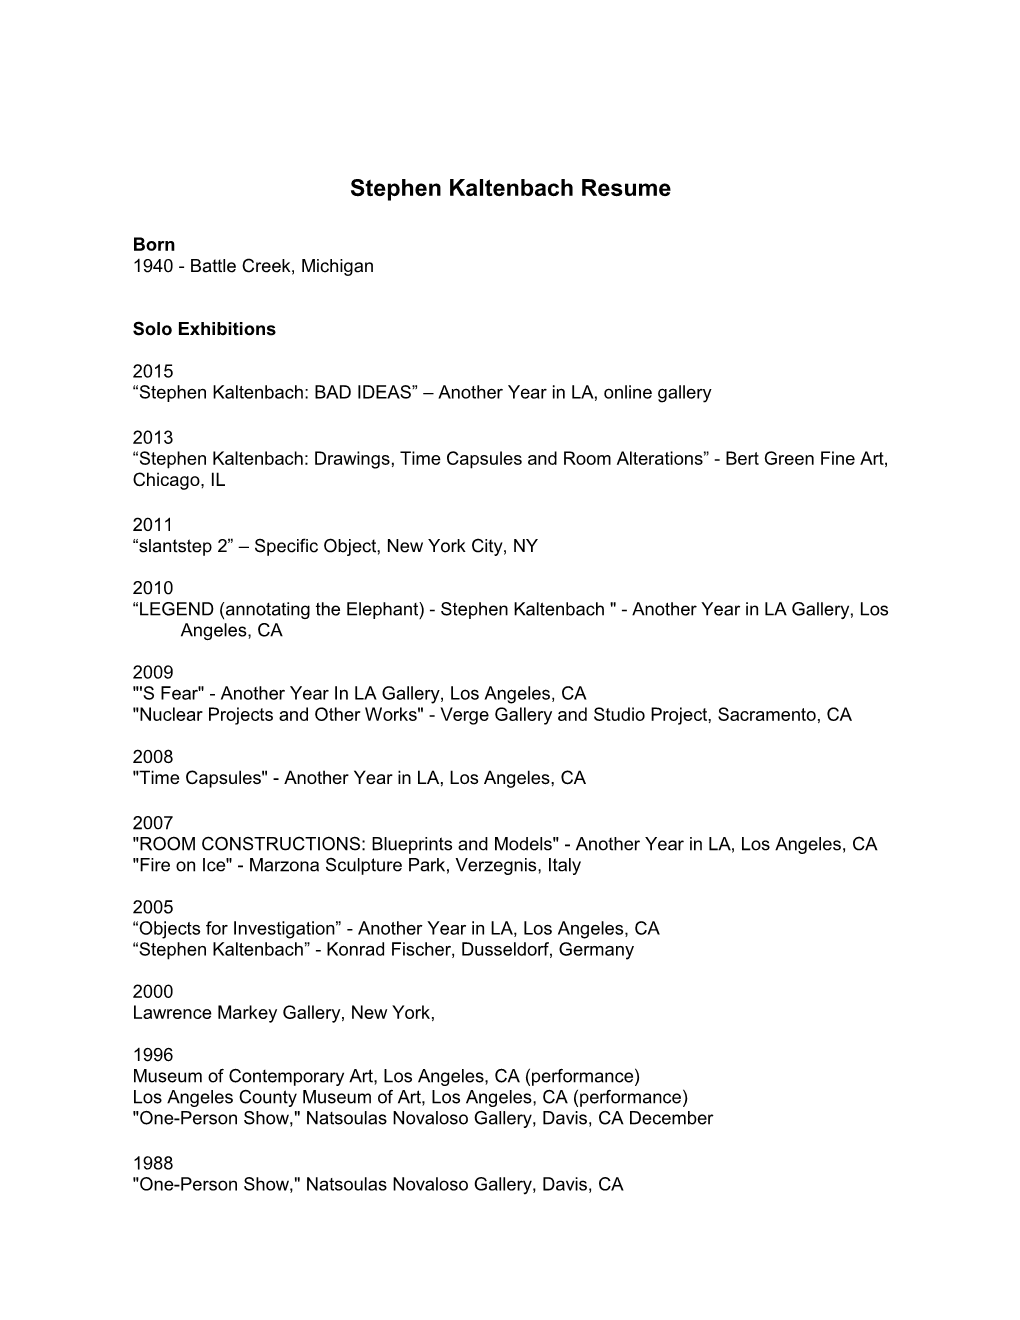 Stephen Kaltenbach Resume